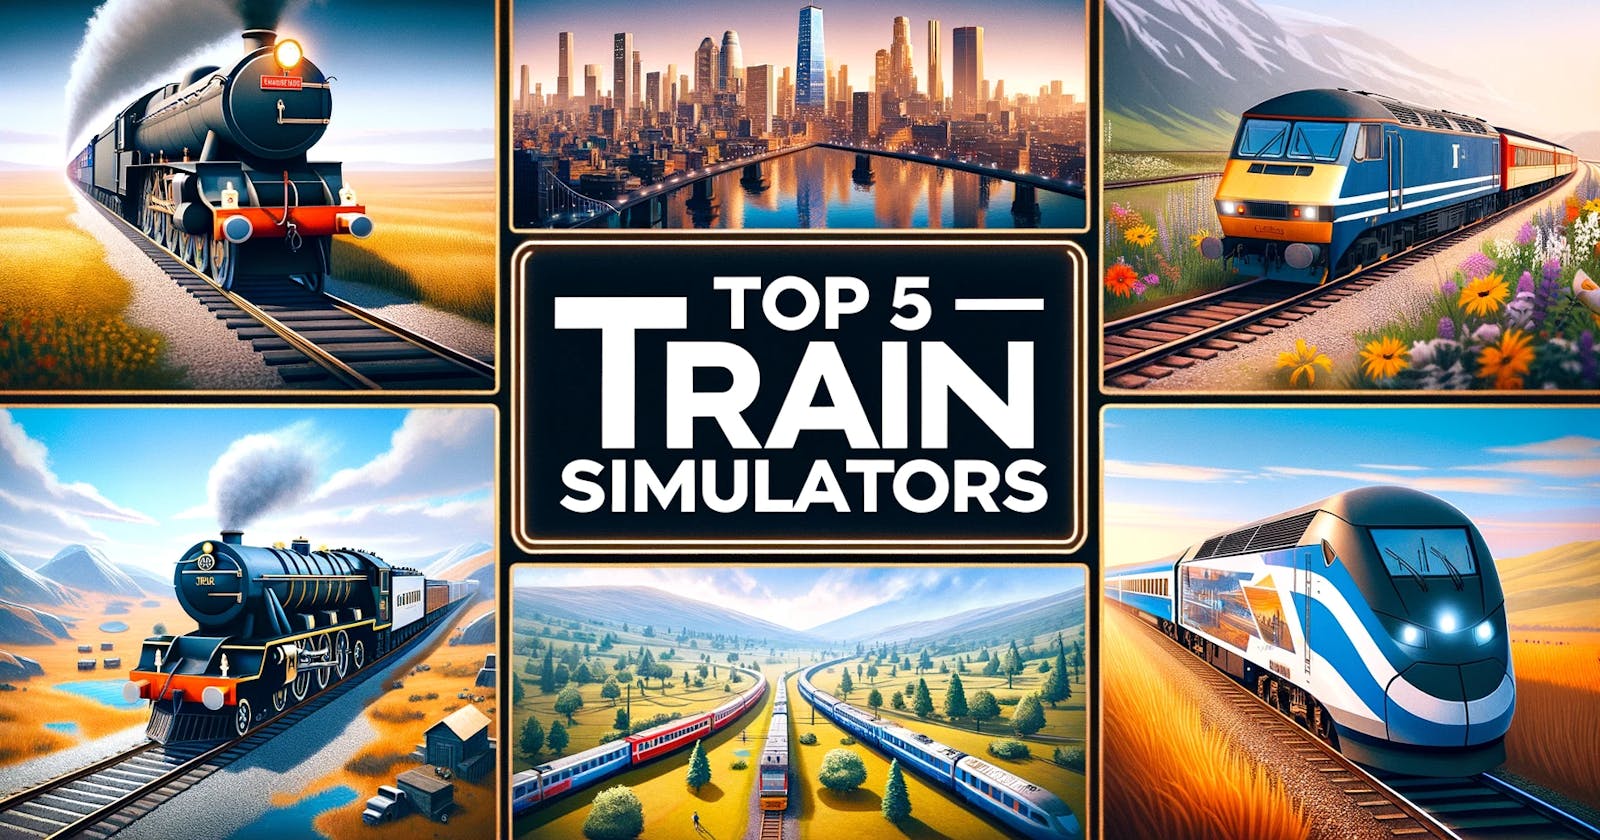 All Aboard! The World of Train Simulators